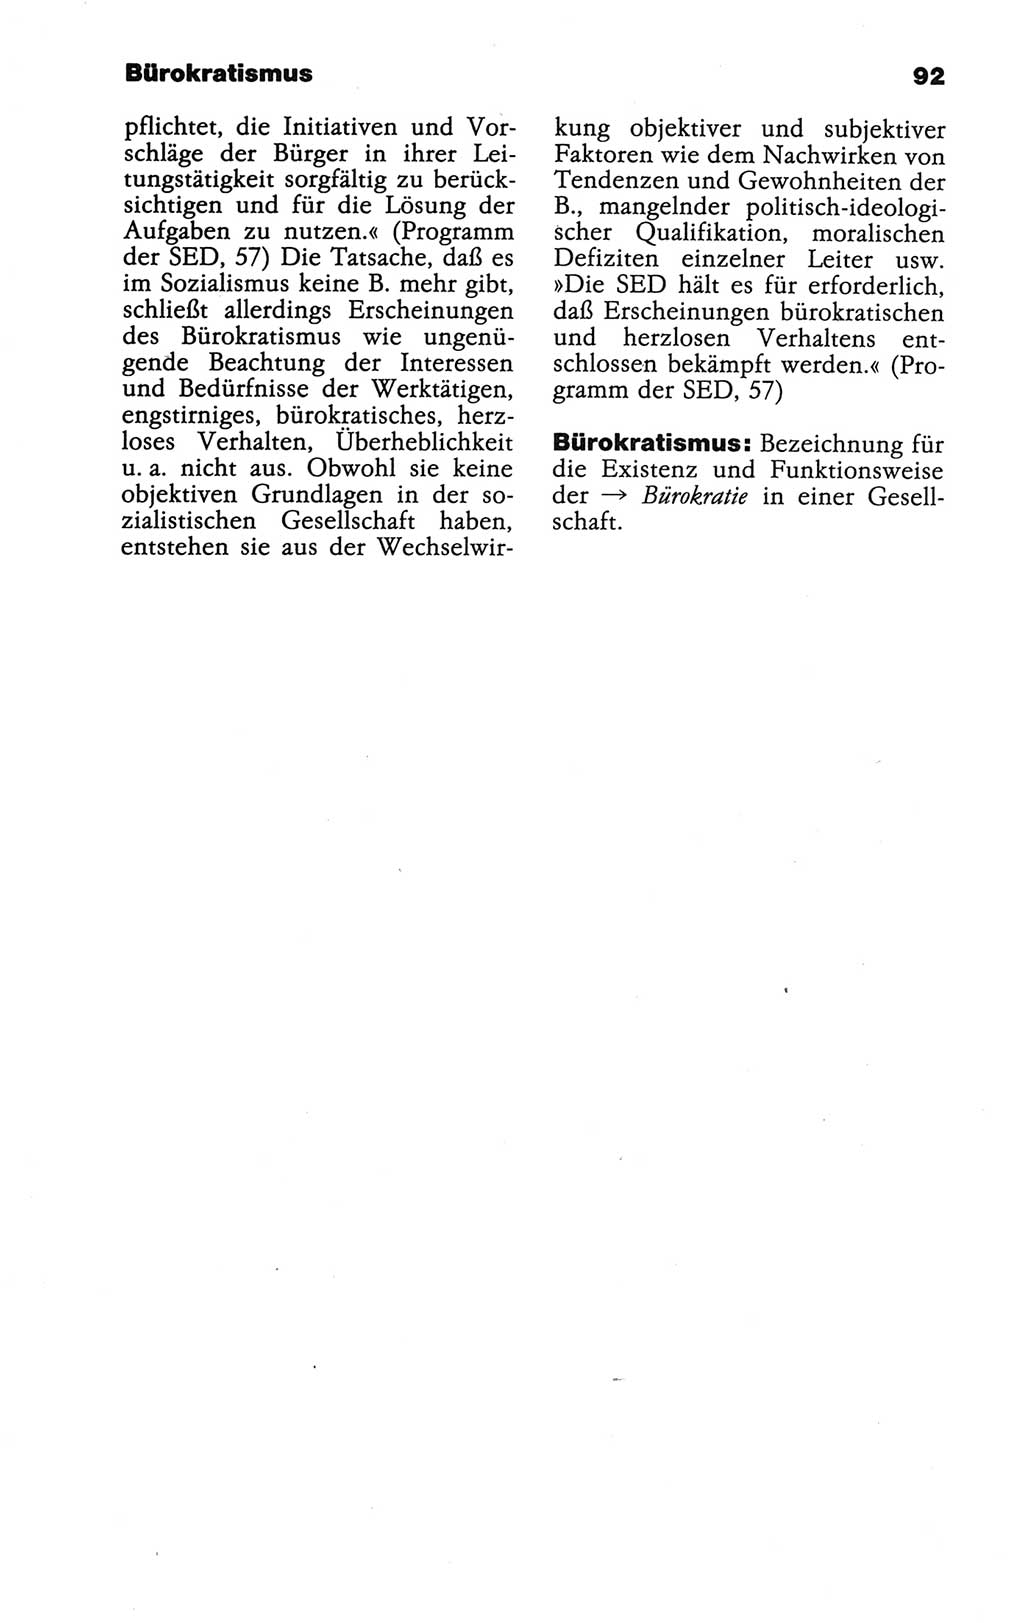 Wörterbuch der marxistisch-leninistischen Philosophie [Deutsche Demokratische Republik (DDR)] 1986, Seite 92 (Wb. ML Phil. DDR 1986, S. 92)